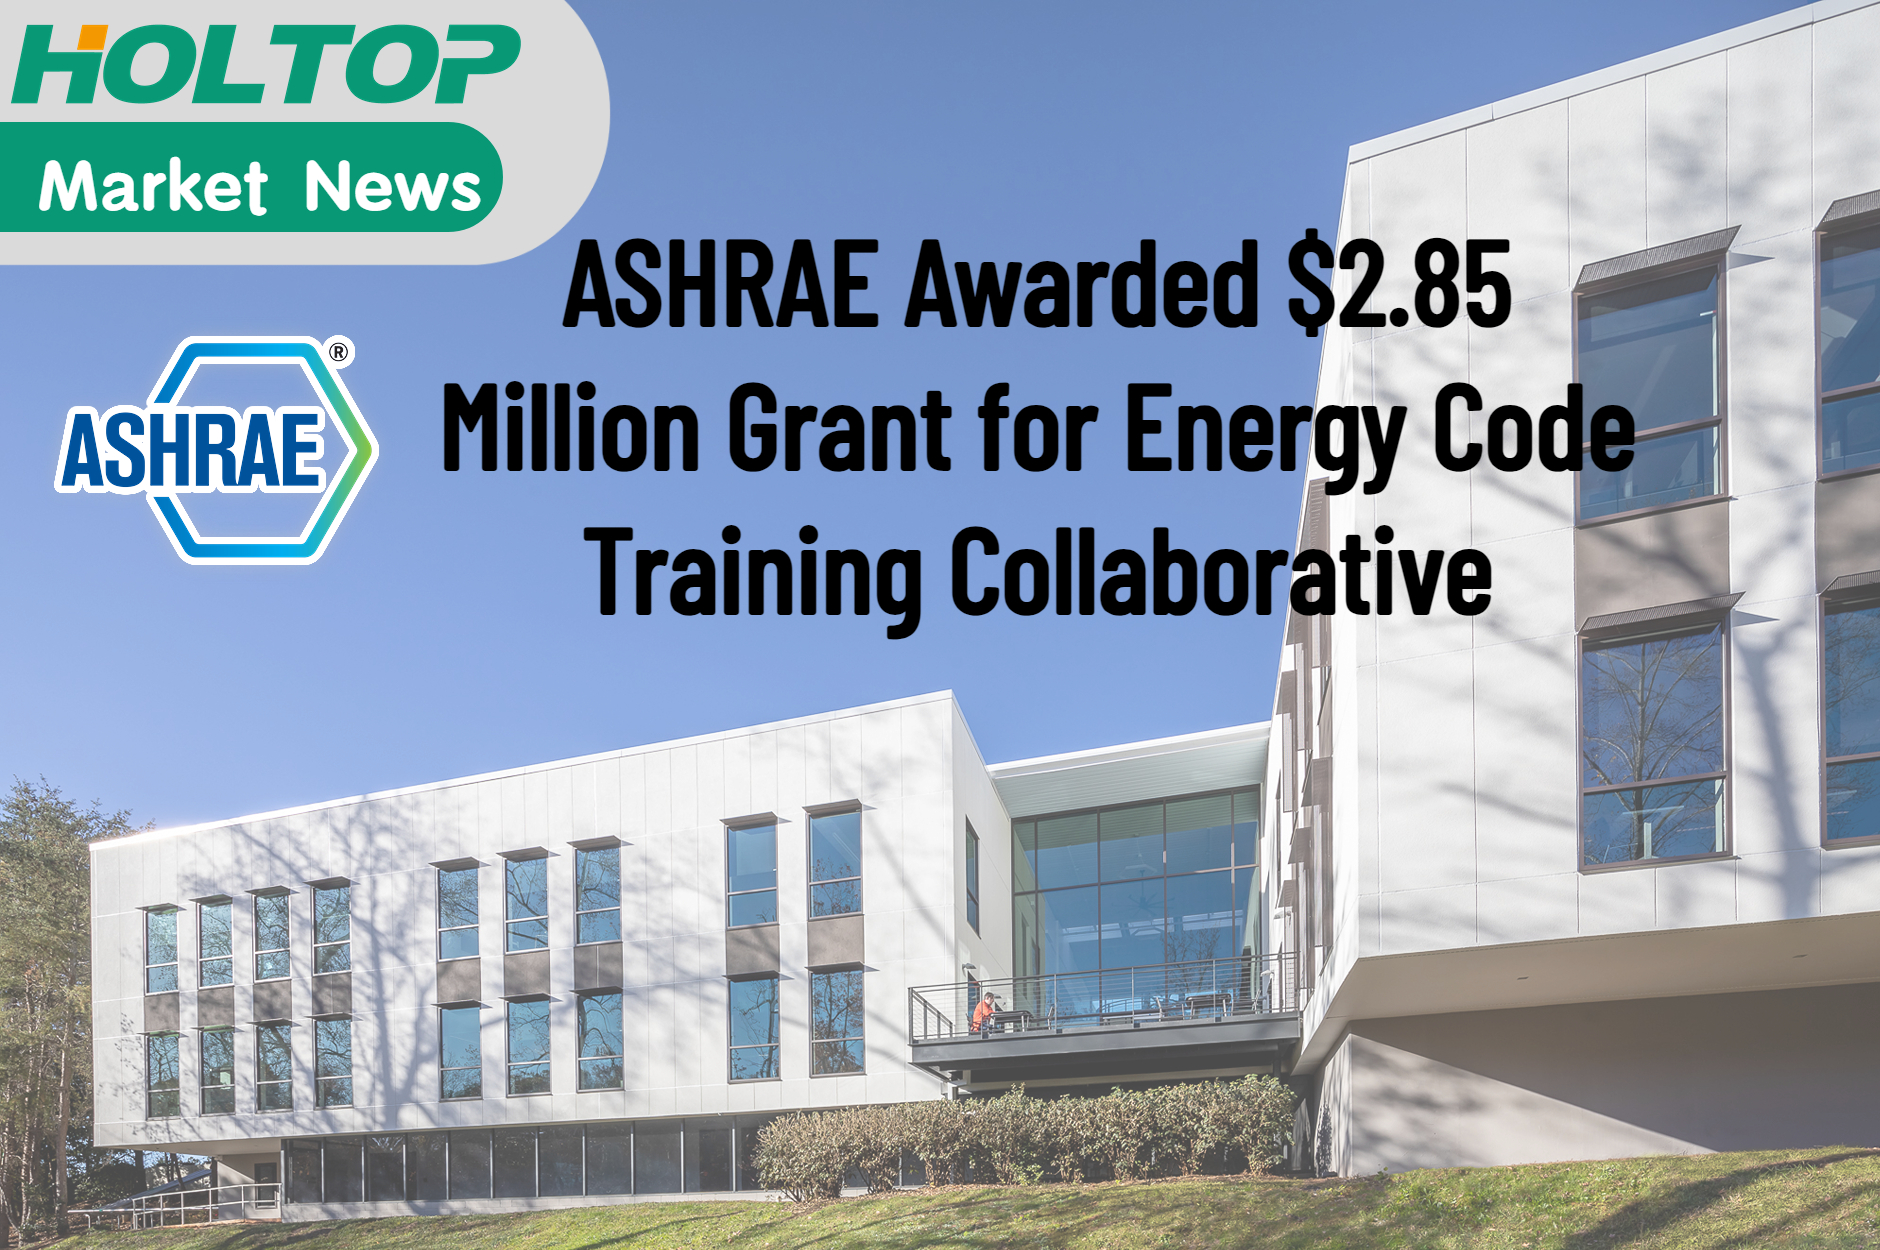 ASHRAE recibió una subvención de $2,85 millones para la colaboración de capacitación sobre el código de energía